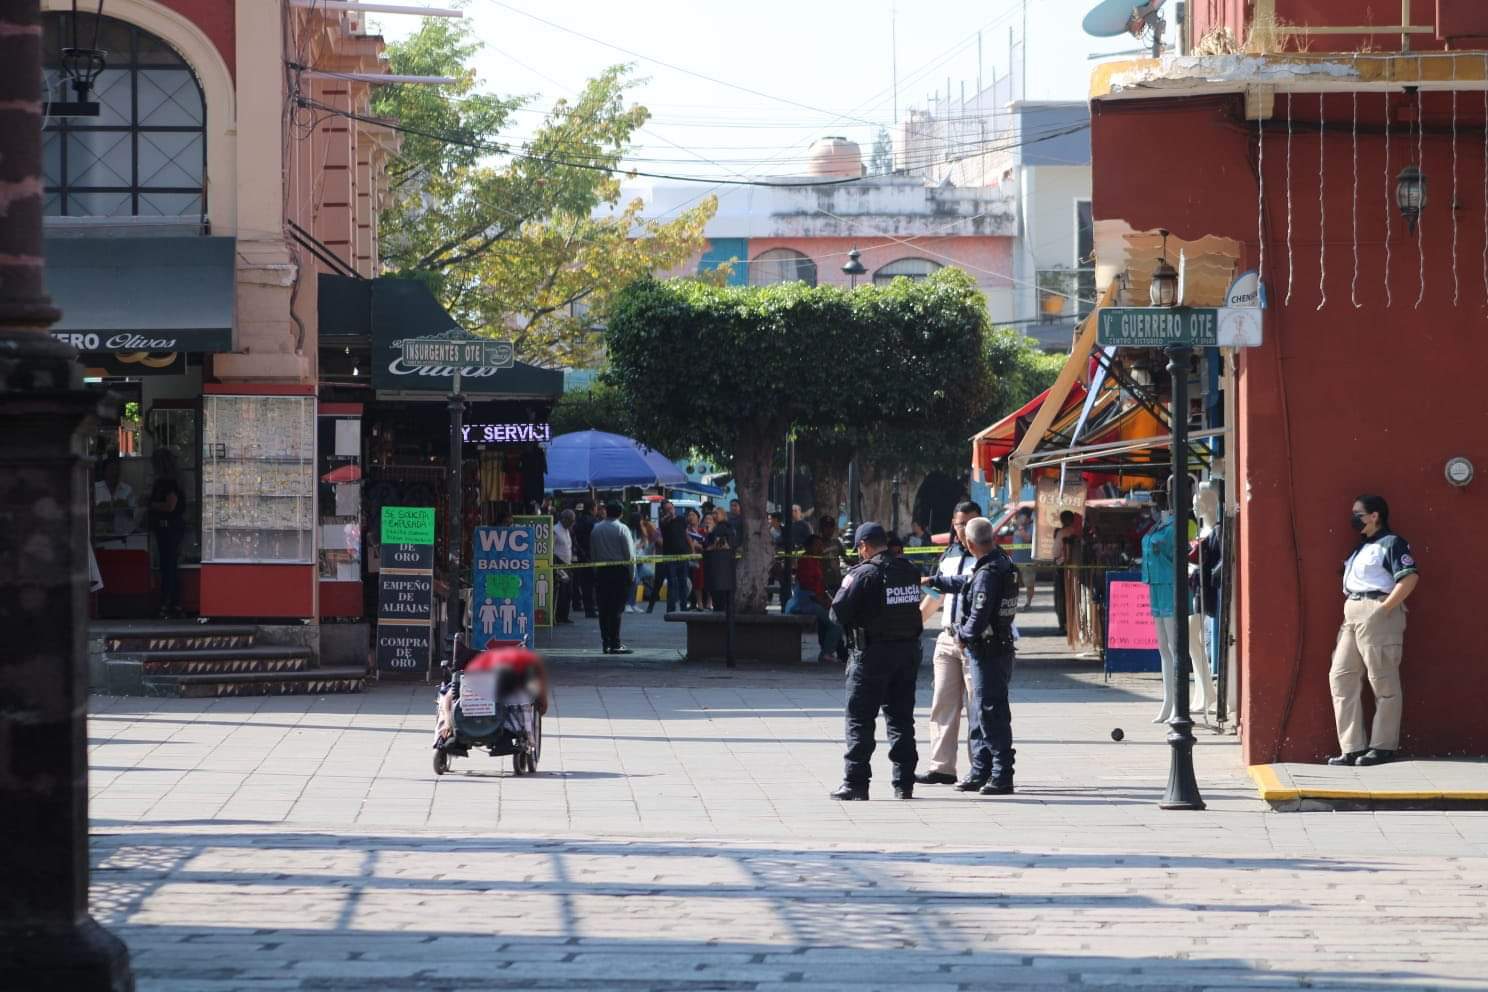 Empistolado mata a hombre en silla de ruedas, quien pedía limosna en Plaza de Zamora